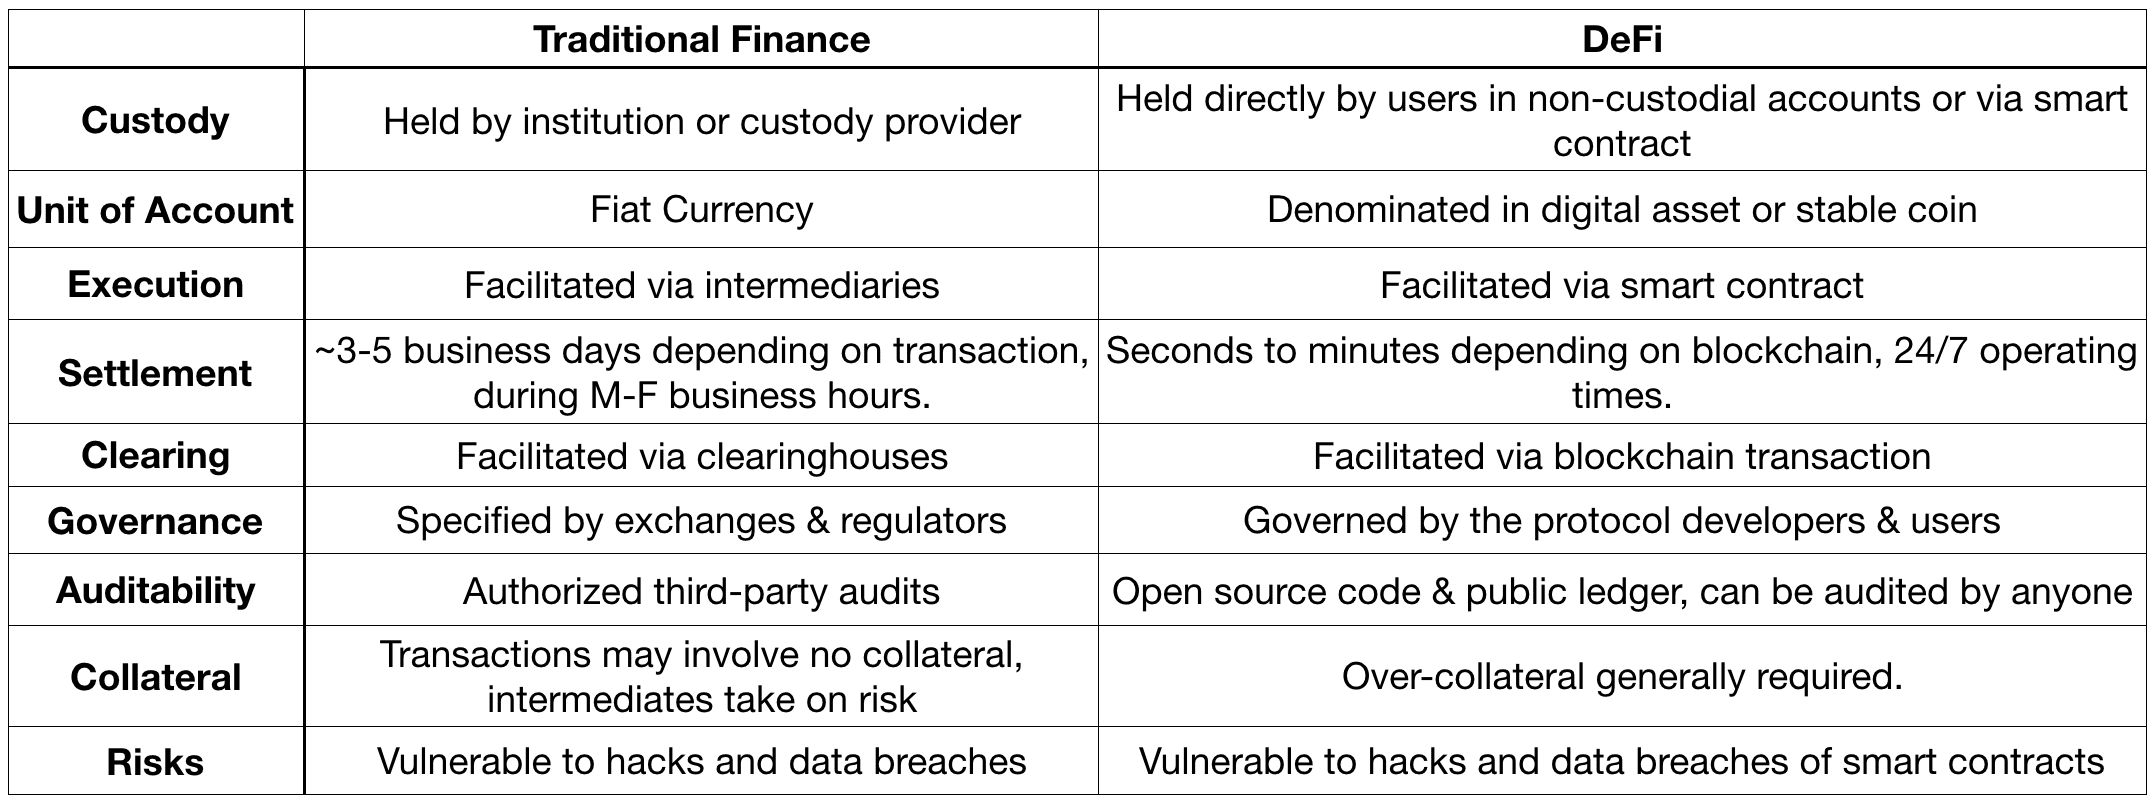 一文纵览DeFi基础设施与市场格局：有哪些关键组件，与传统金融有什么区别？